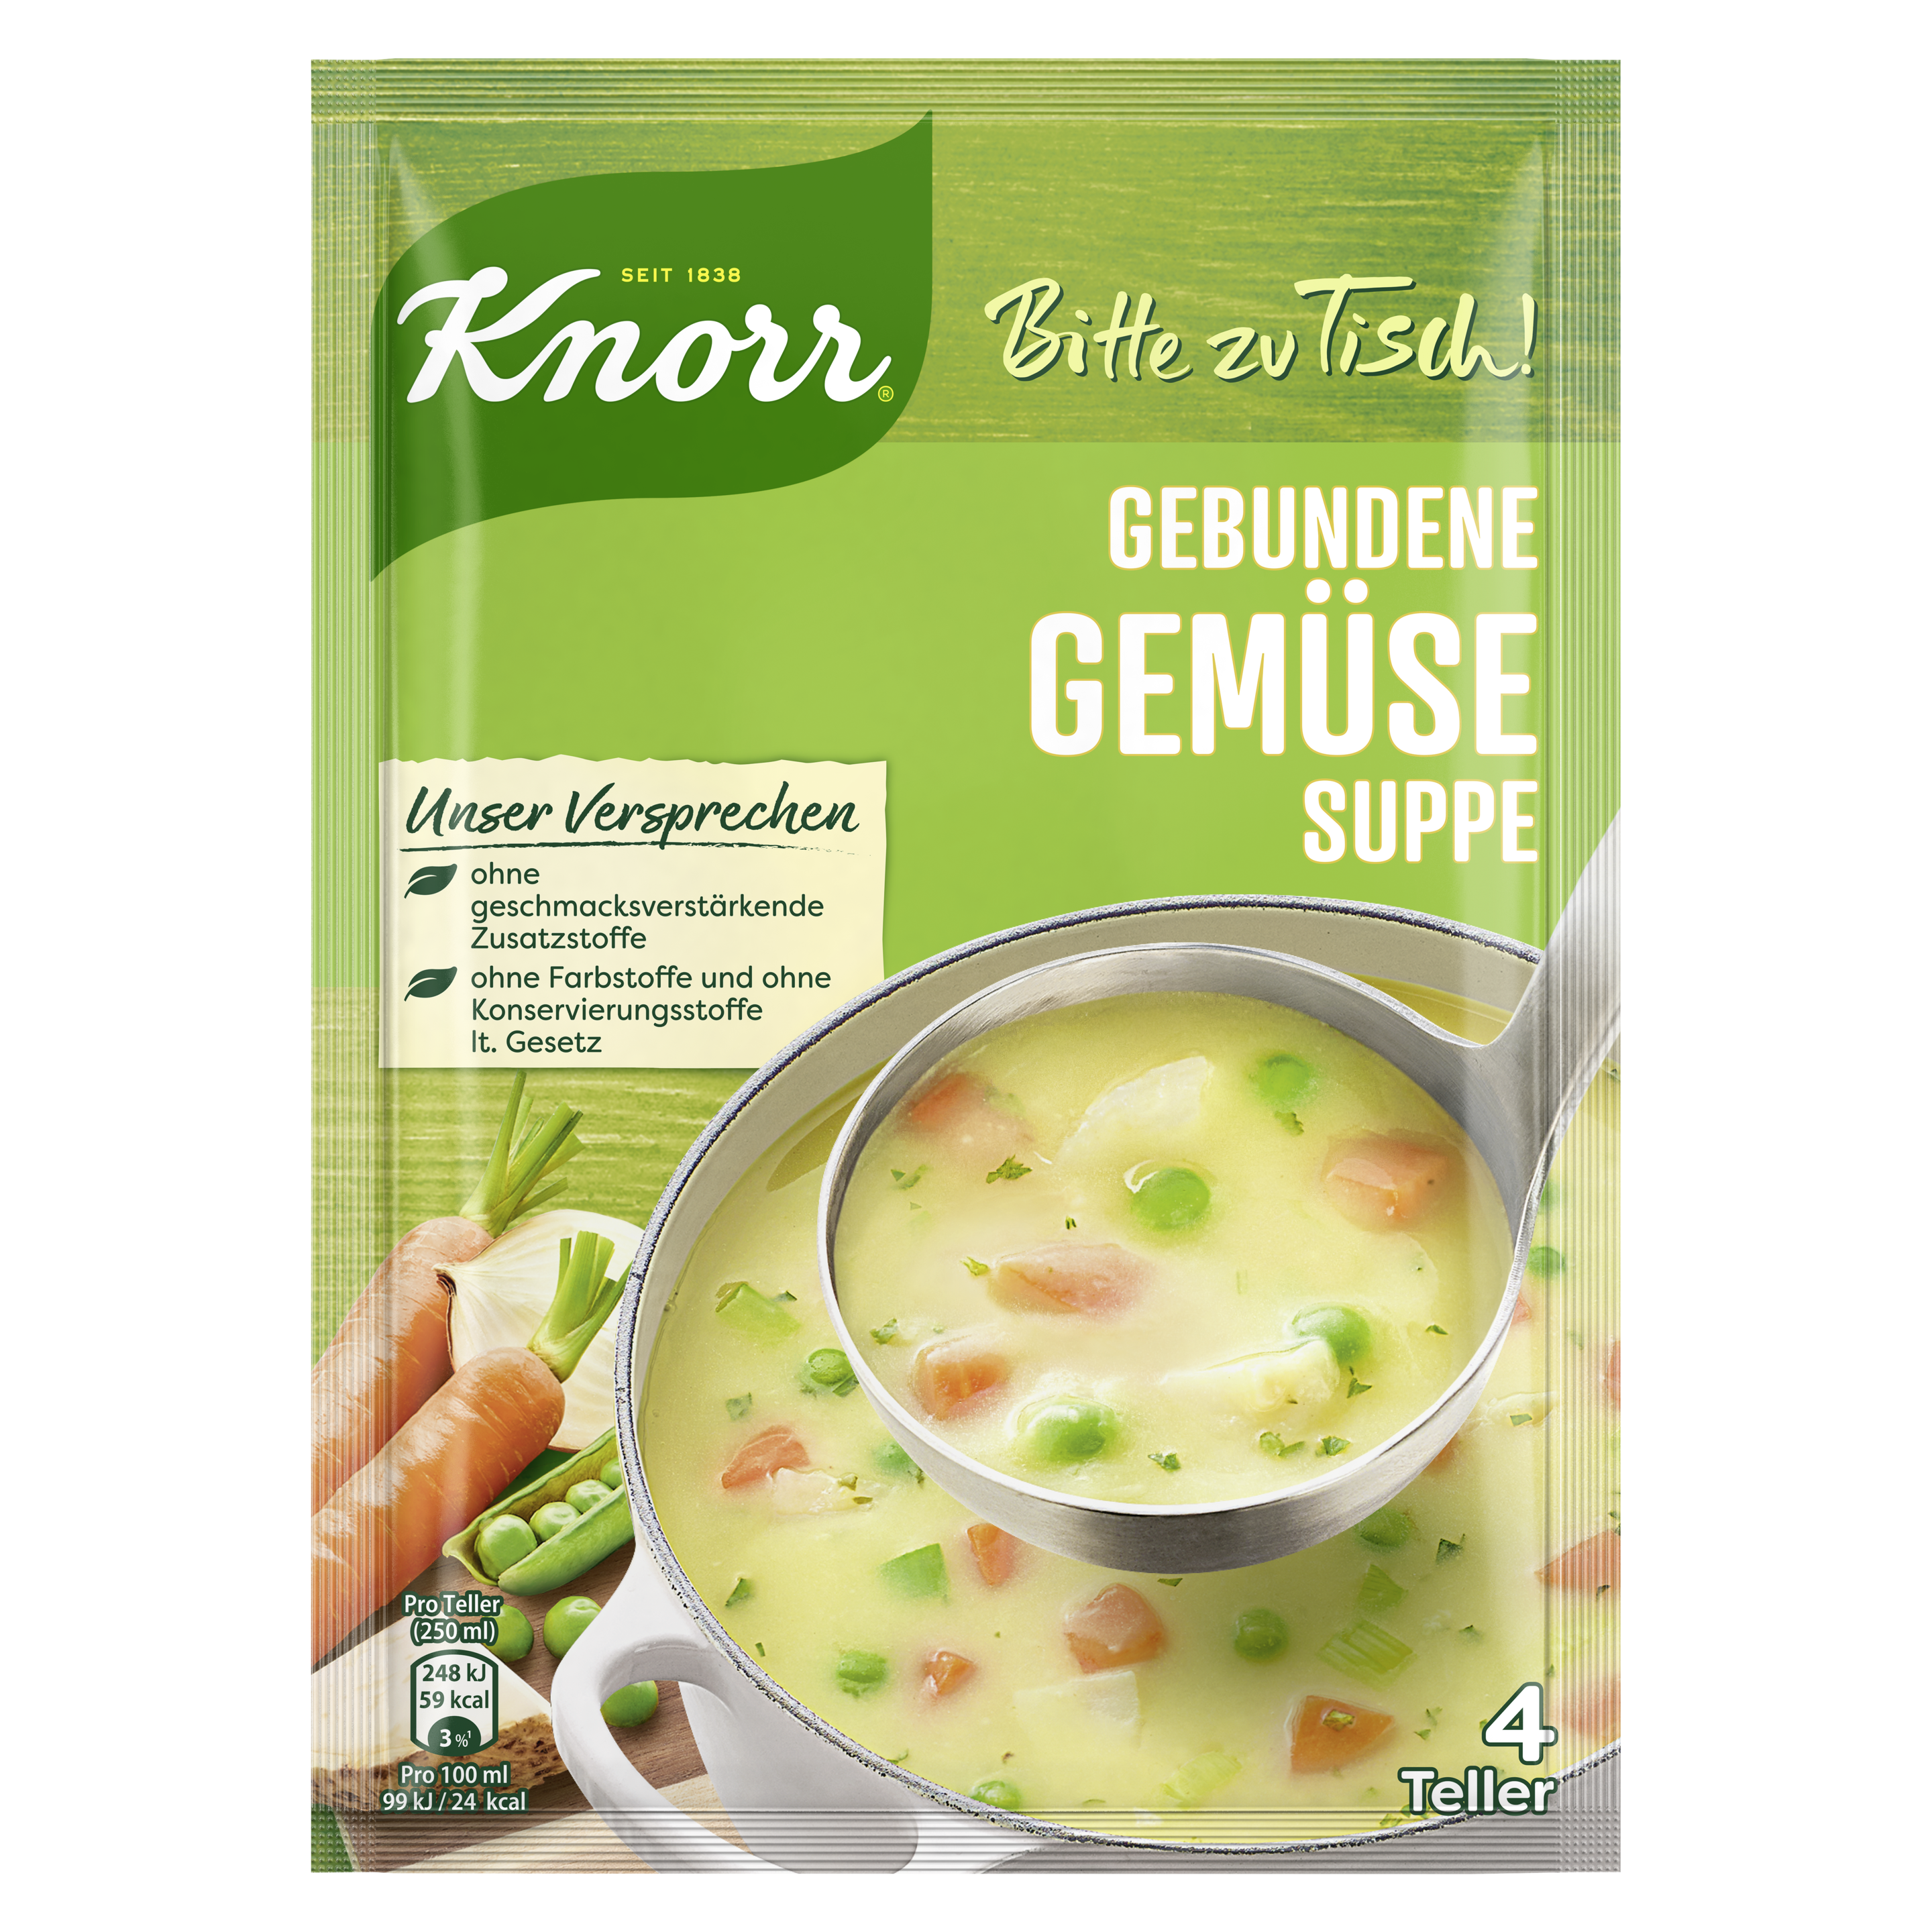 Knorr Bitte zu Tisch! Gebundene Gemüse Suppe 4 Teller